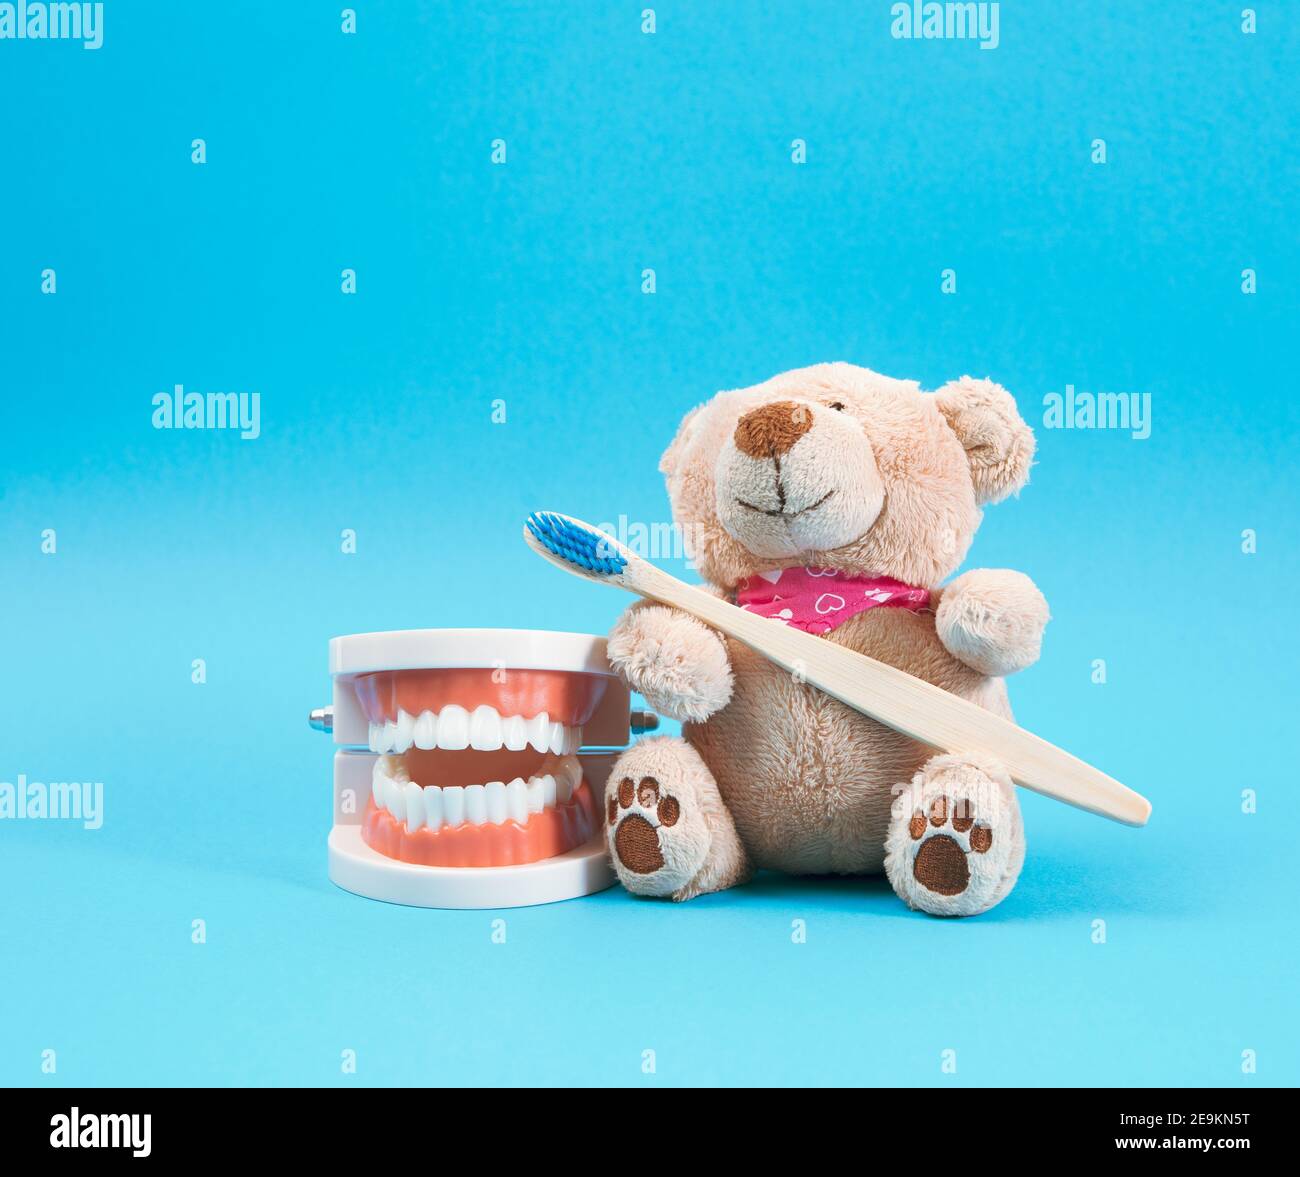 modello in plastica di una mascella umana con denti bianchi e un orsetto marrone con uno spazzolino da denti in legno su sfondo blu, odontoiatria e igiene per bambini Foto Stock